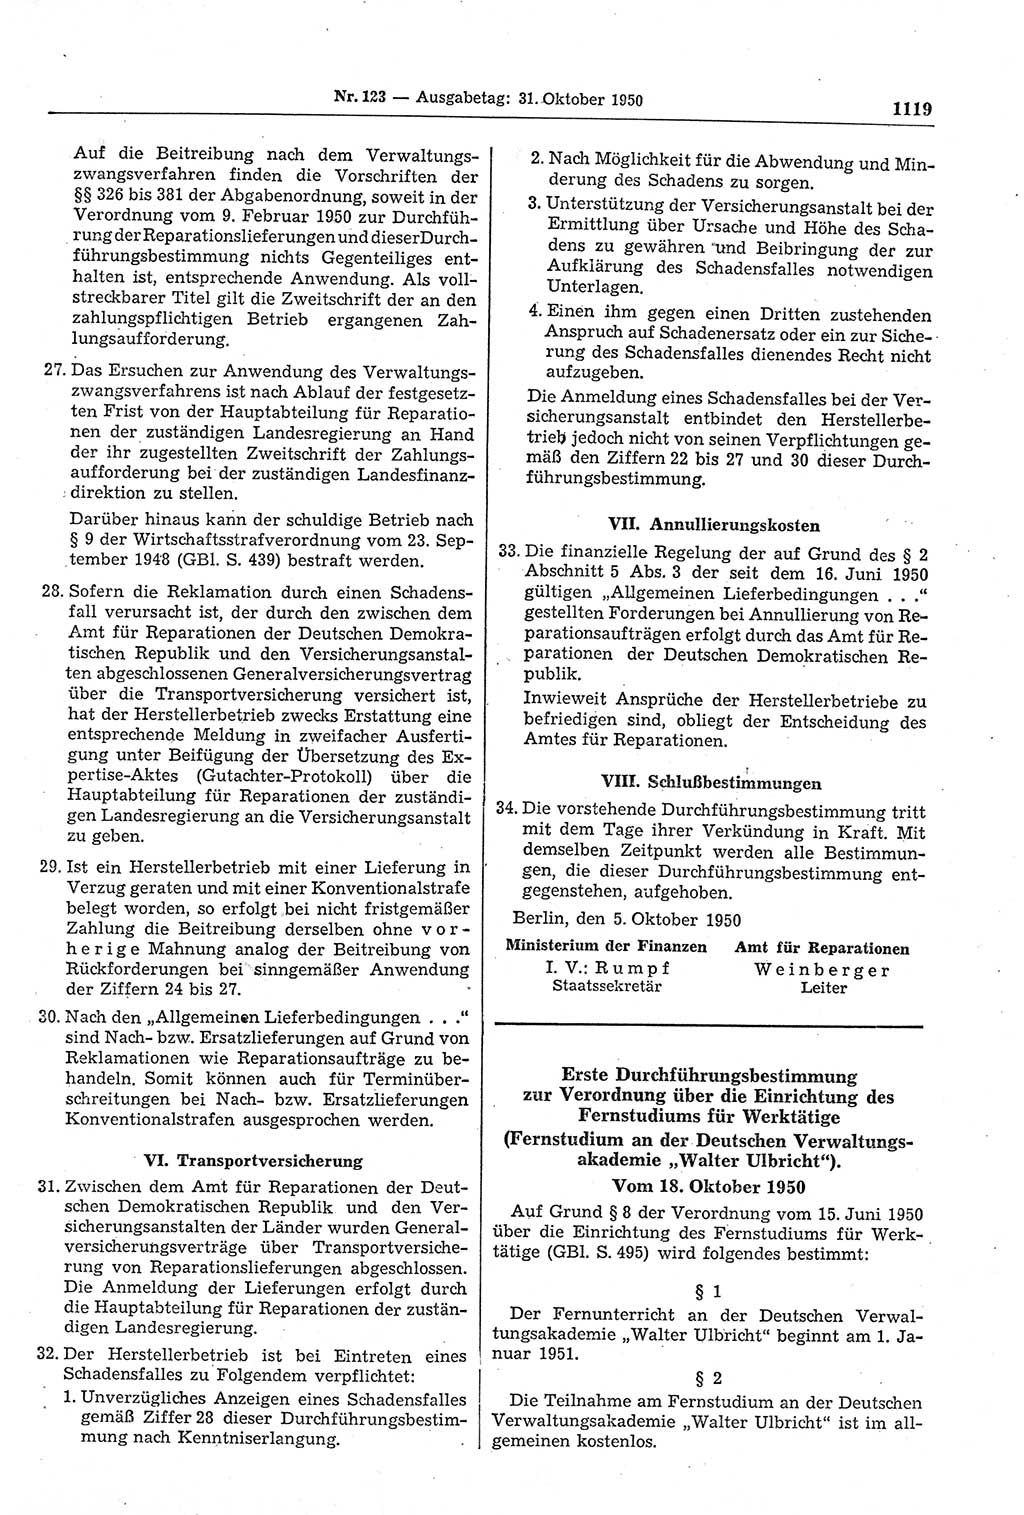 Gesetzblatt (GBl.) der Deutschen Demokratischen Republik (DDR) 1950, Seite 1119 (GBl. DDR 1950, S. 1119)